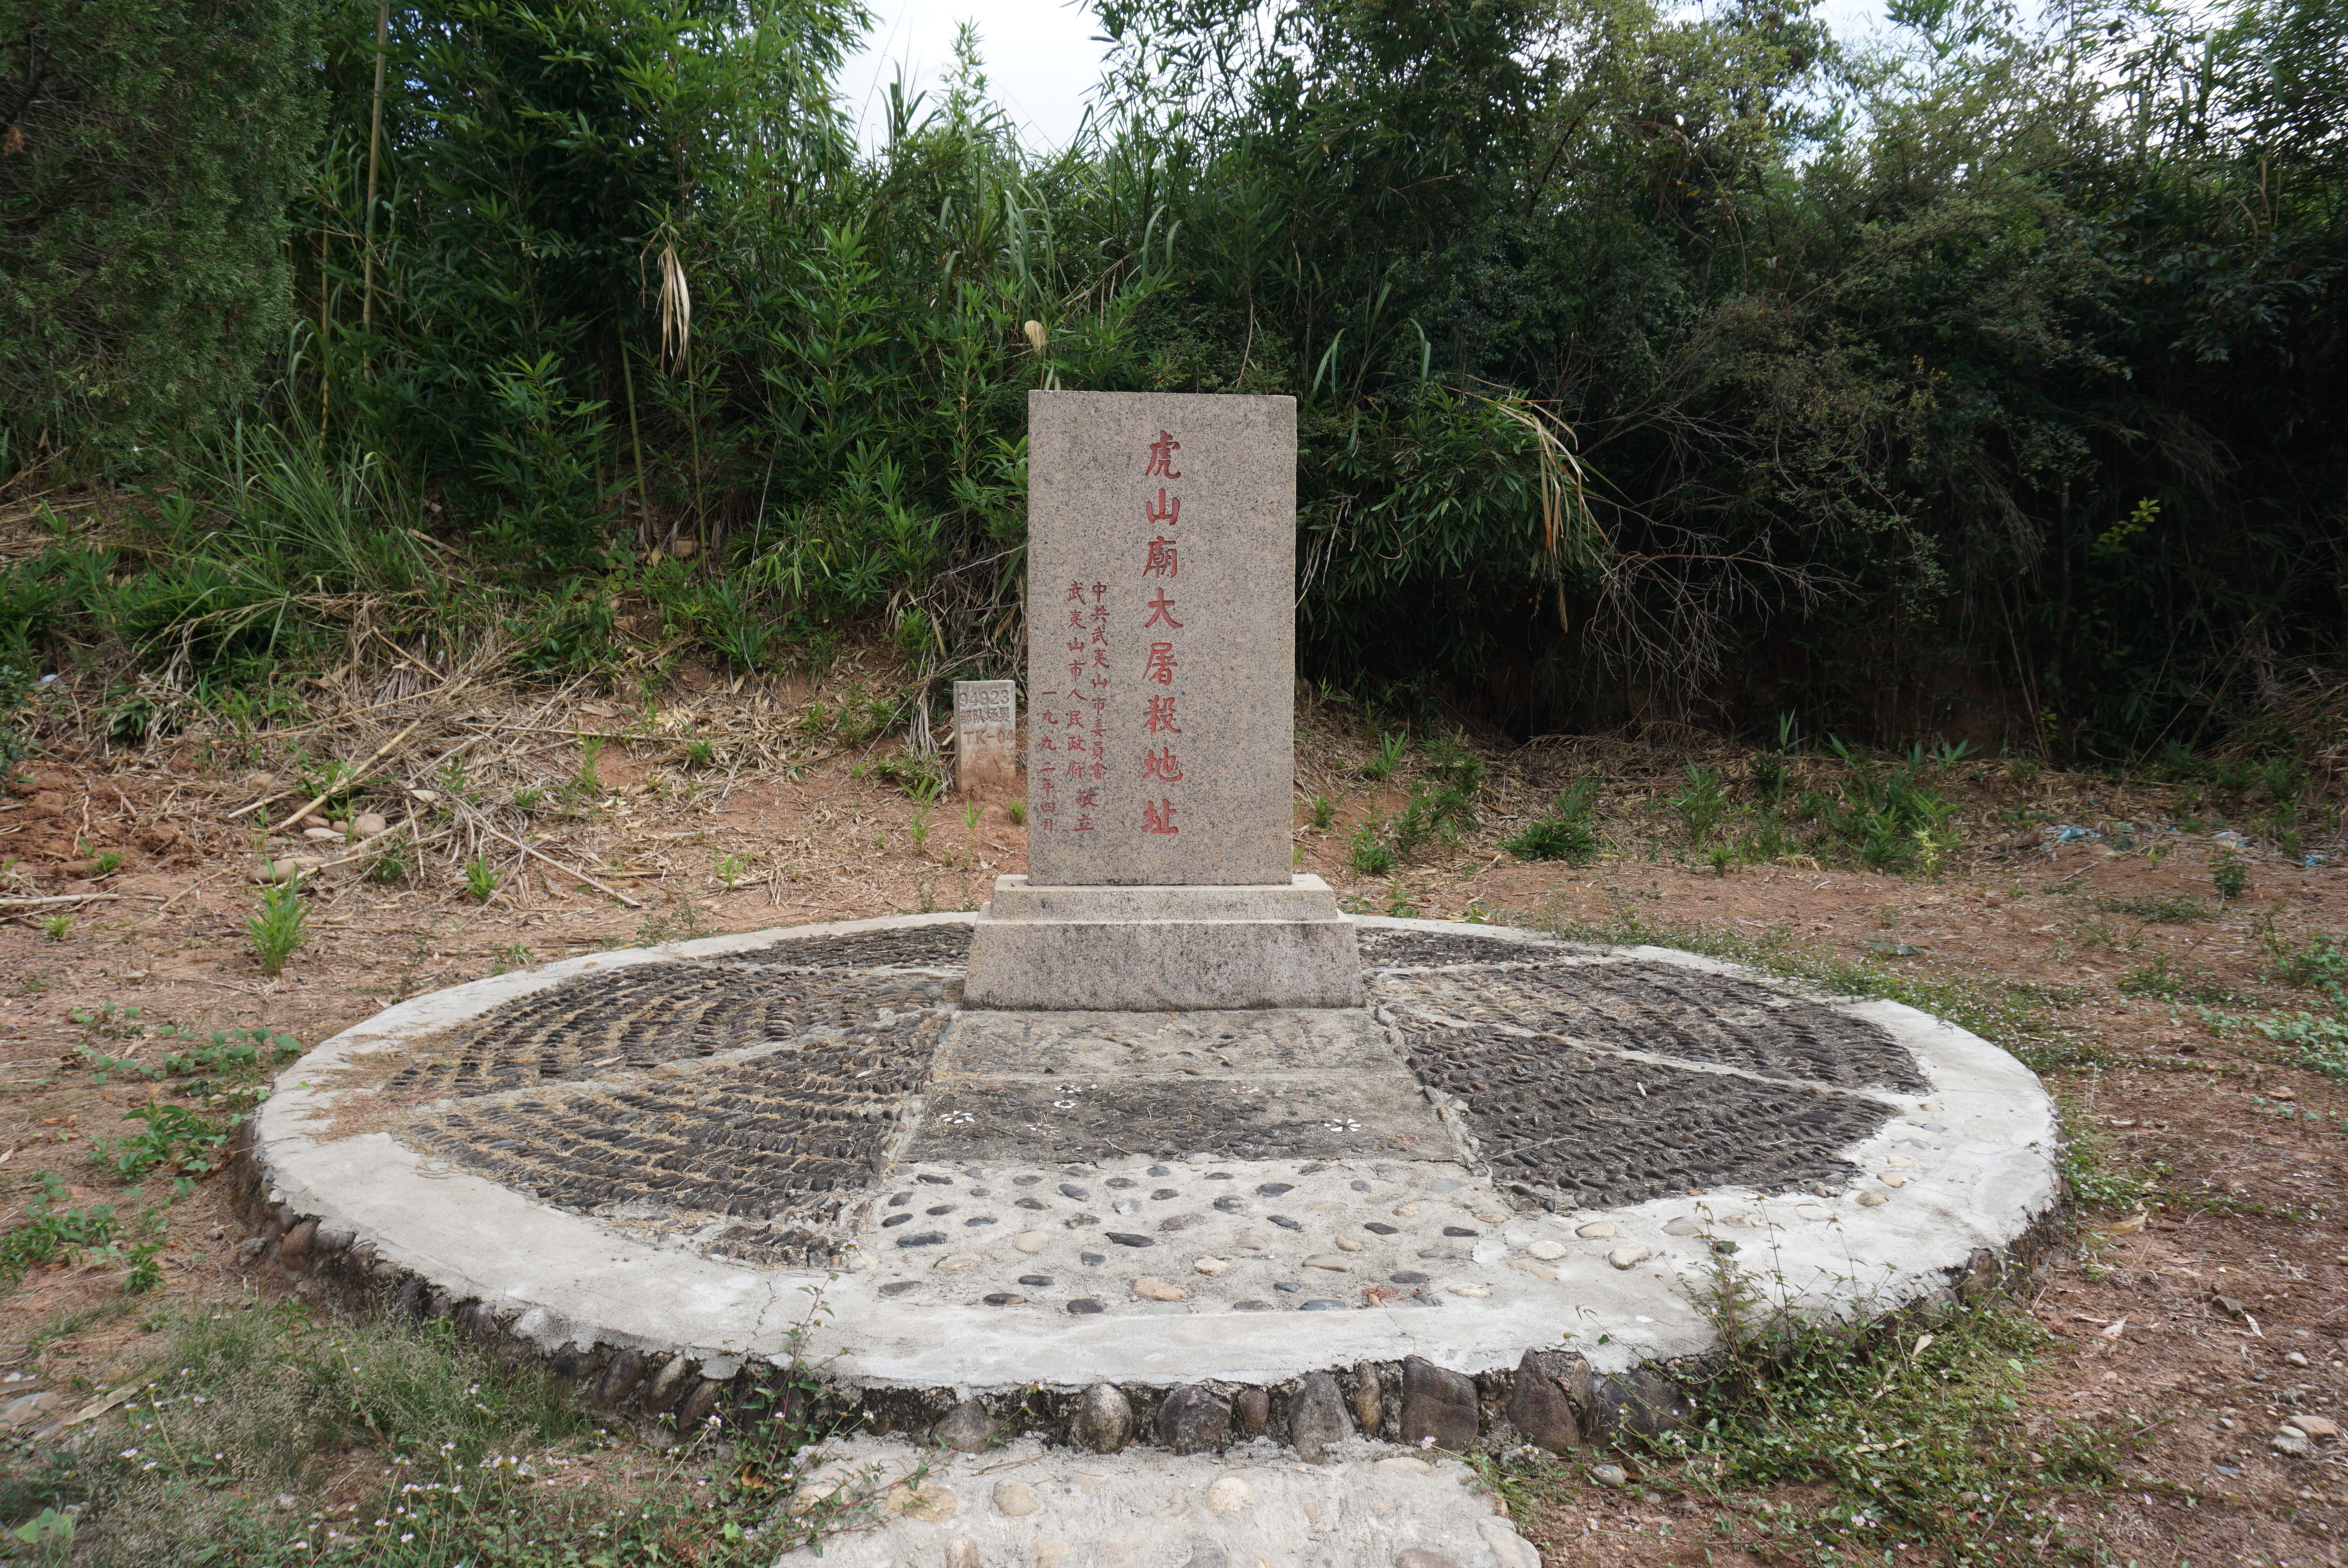 大义凛然，英勇献身——纪念上饶集中营牺牲的21位上海烈士